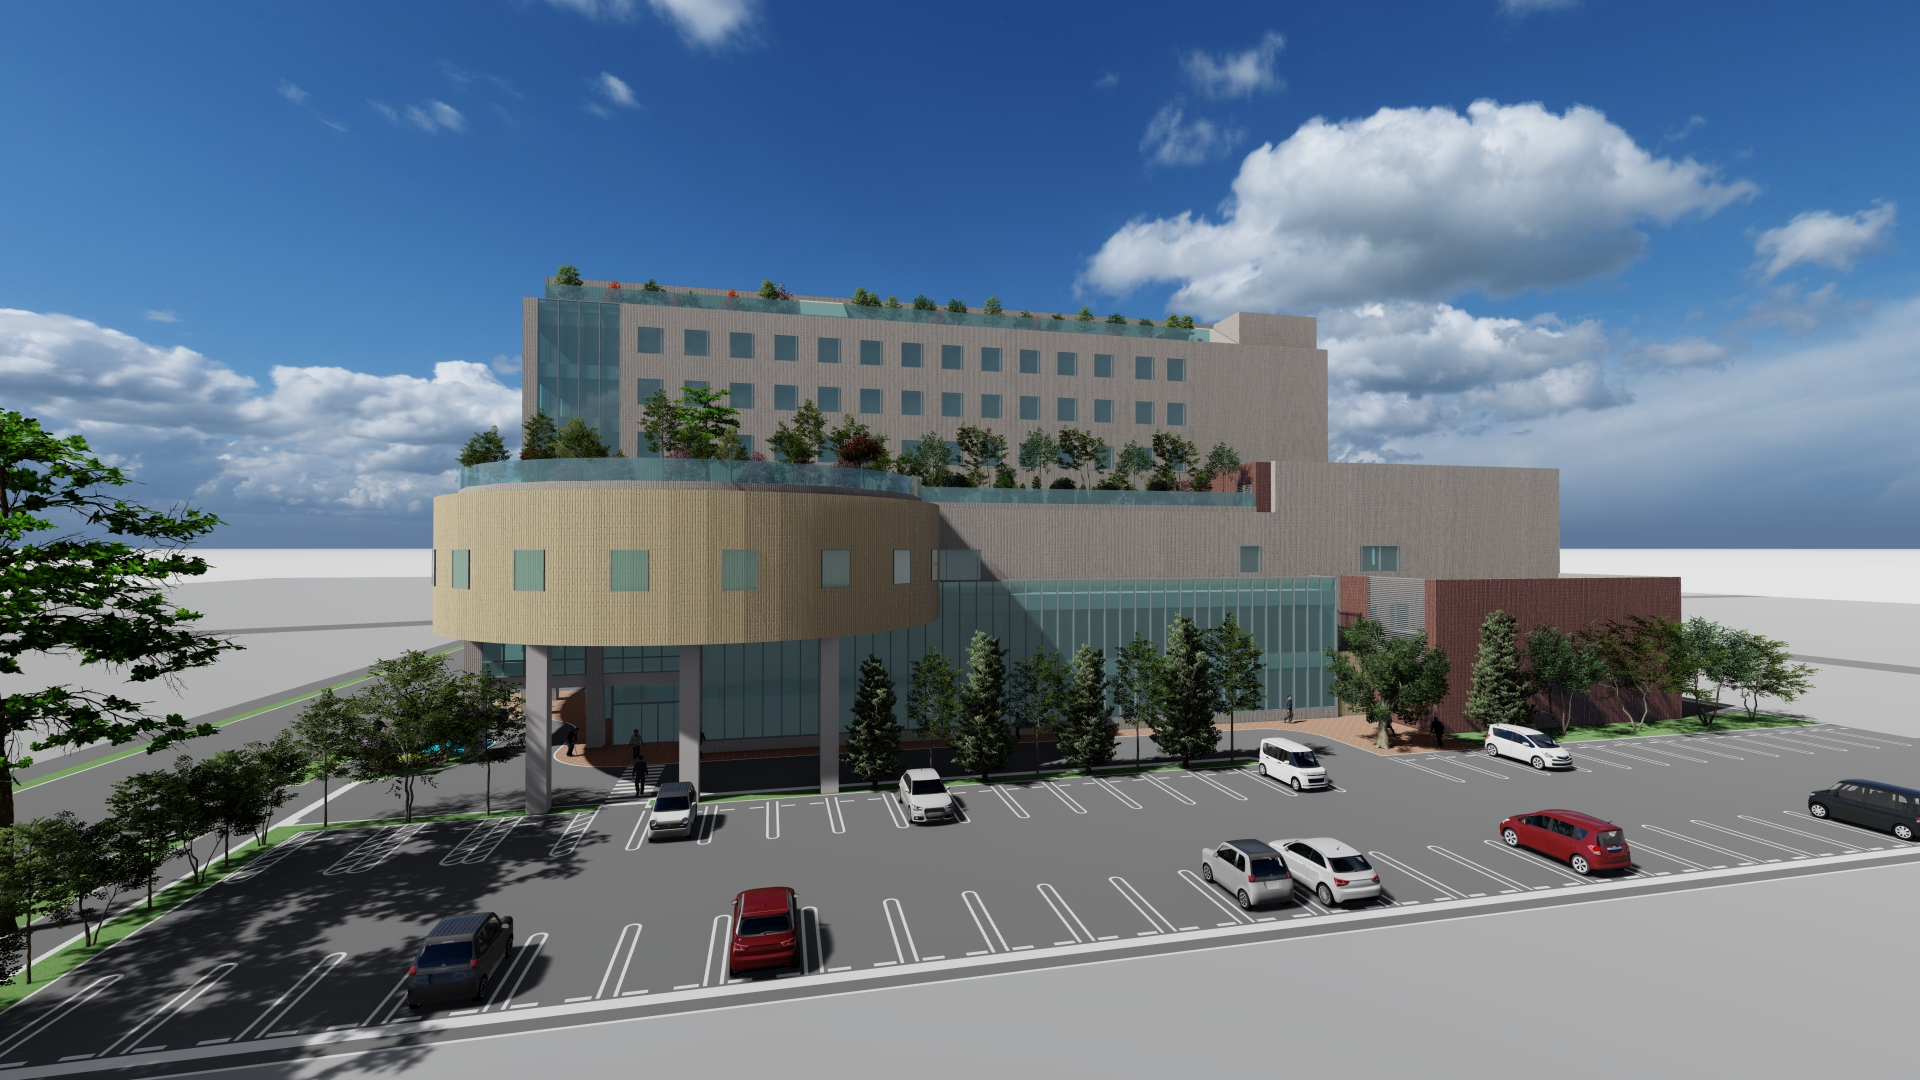 所沢明生病院（50床）と狭山中央病院（111床）が合併移転し、合計221床の新病院となる予定です。